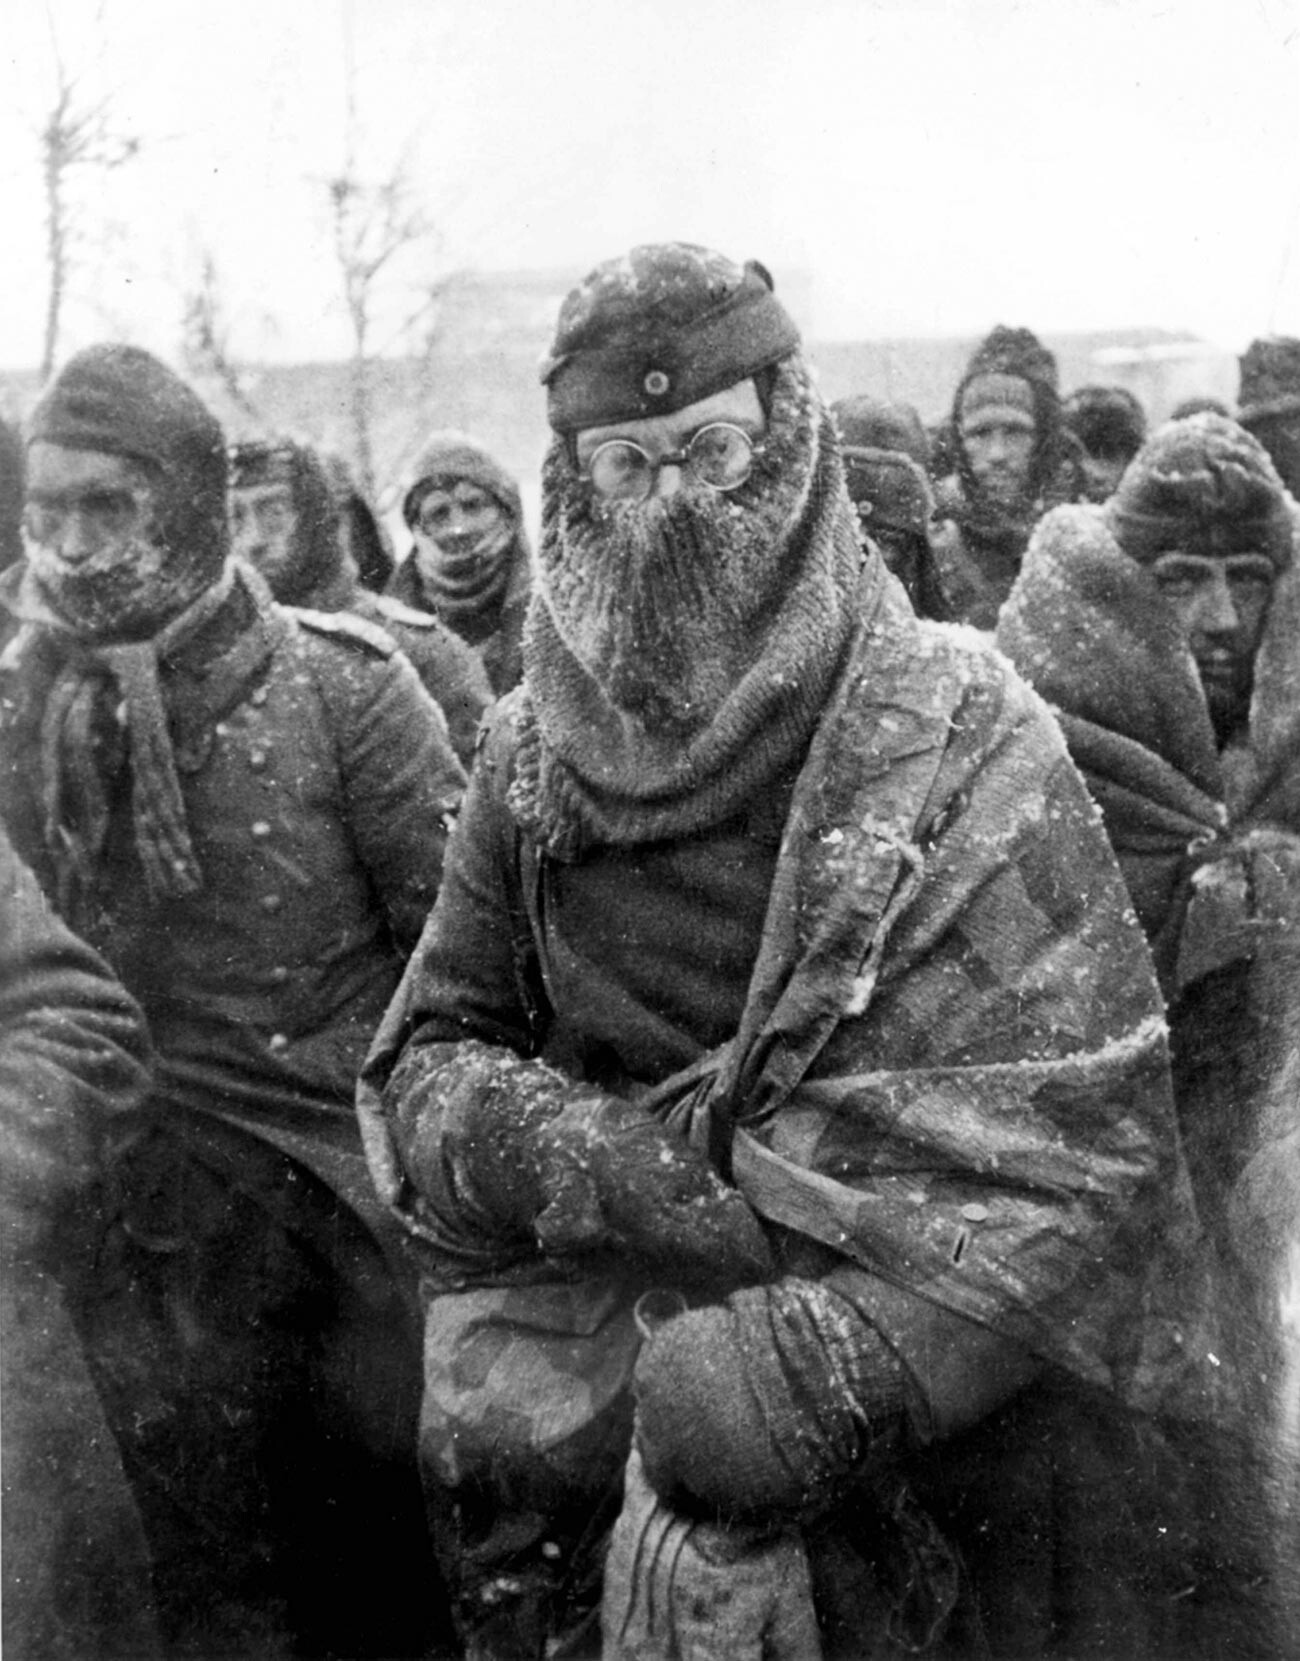 Prisioneros alemanes en Stalingrado.
